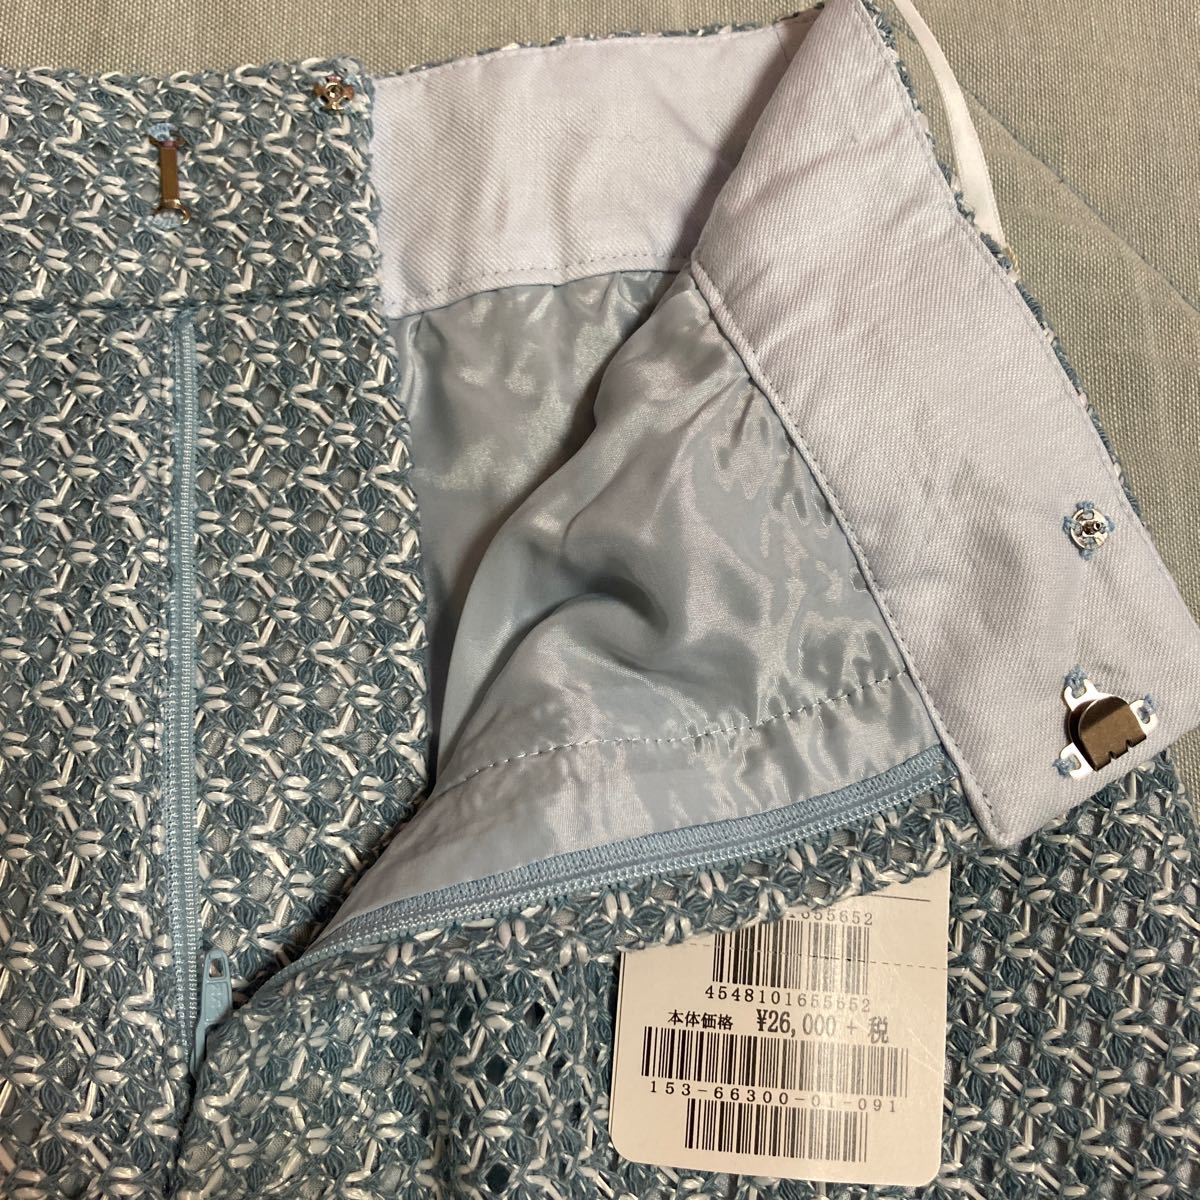  новый товар 1 S Untitled UNTITLED world сделано в Японии linen лен . юбка-брюки юбка женский колени длина бледно-голубой вышивка симпатичный модный юбка-брюки 